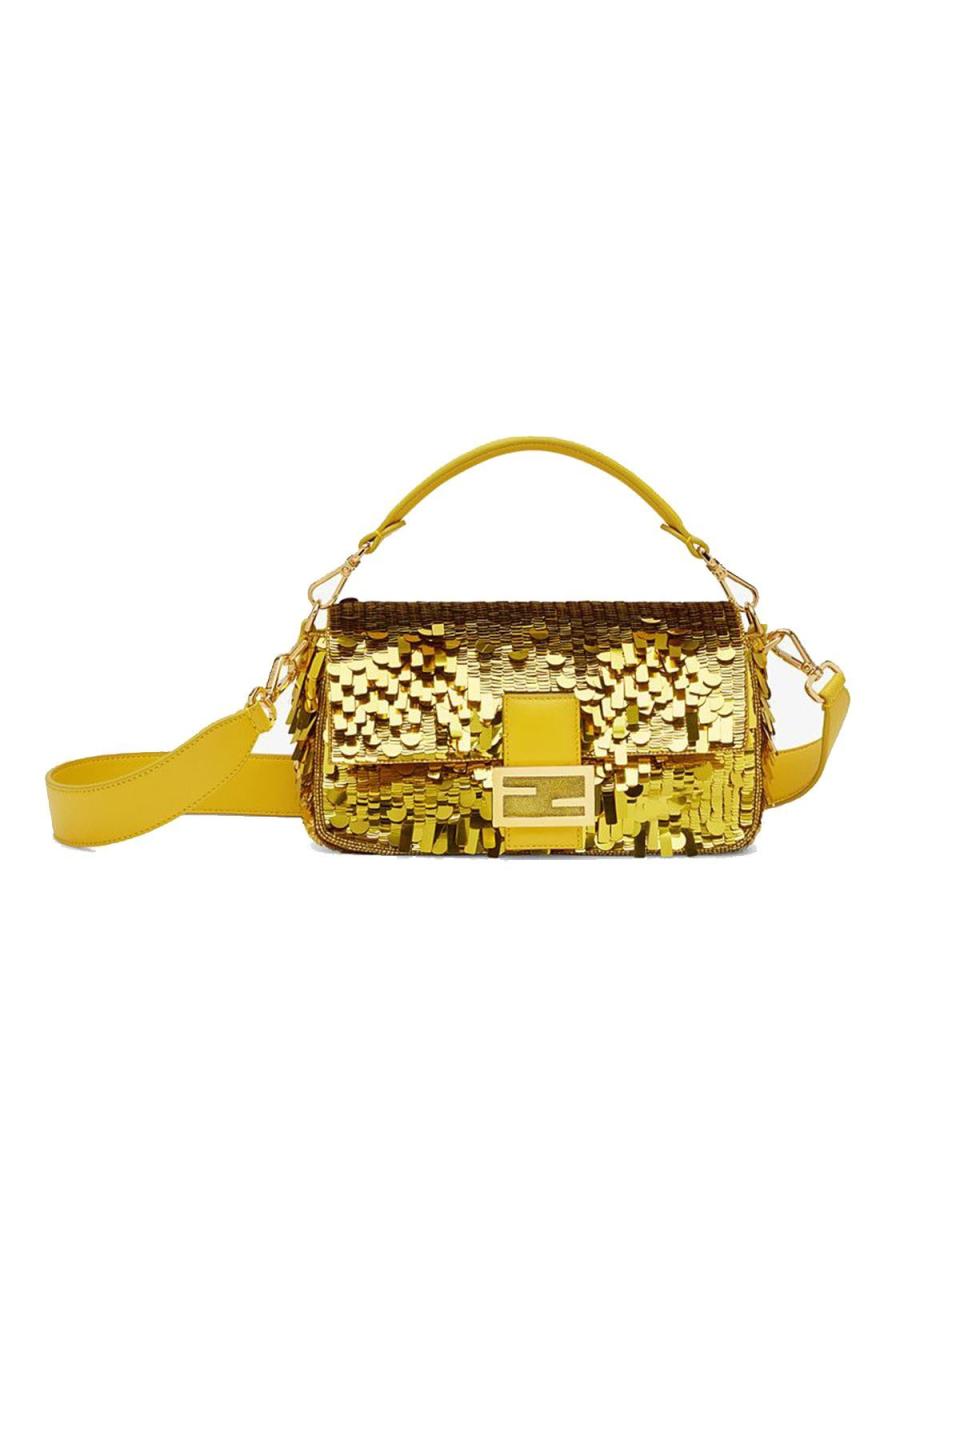 17) Yellow Sequin Baguette Bag